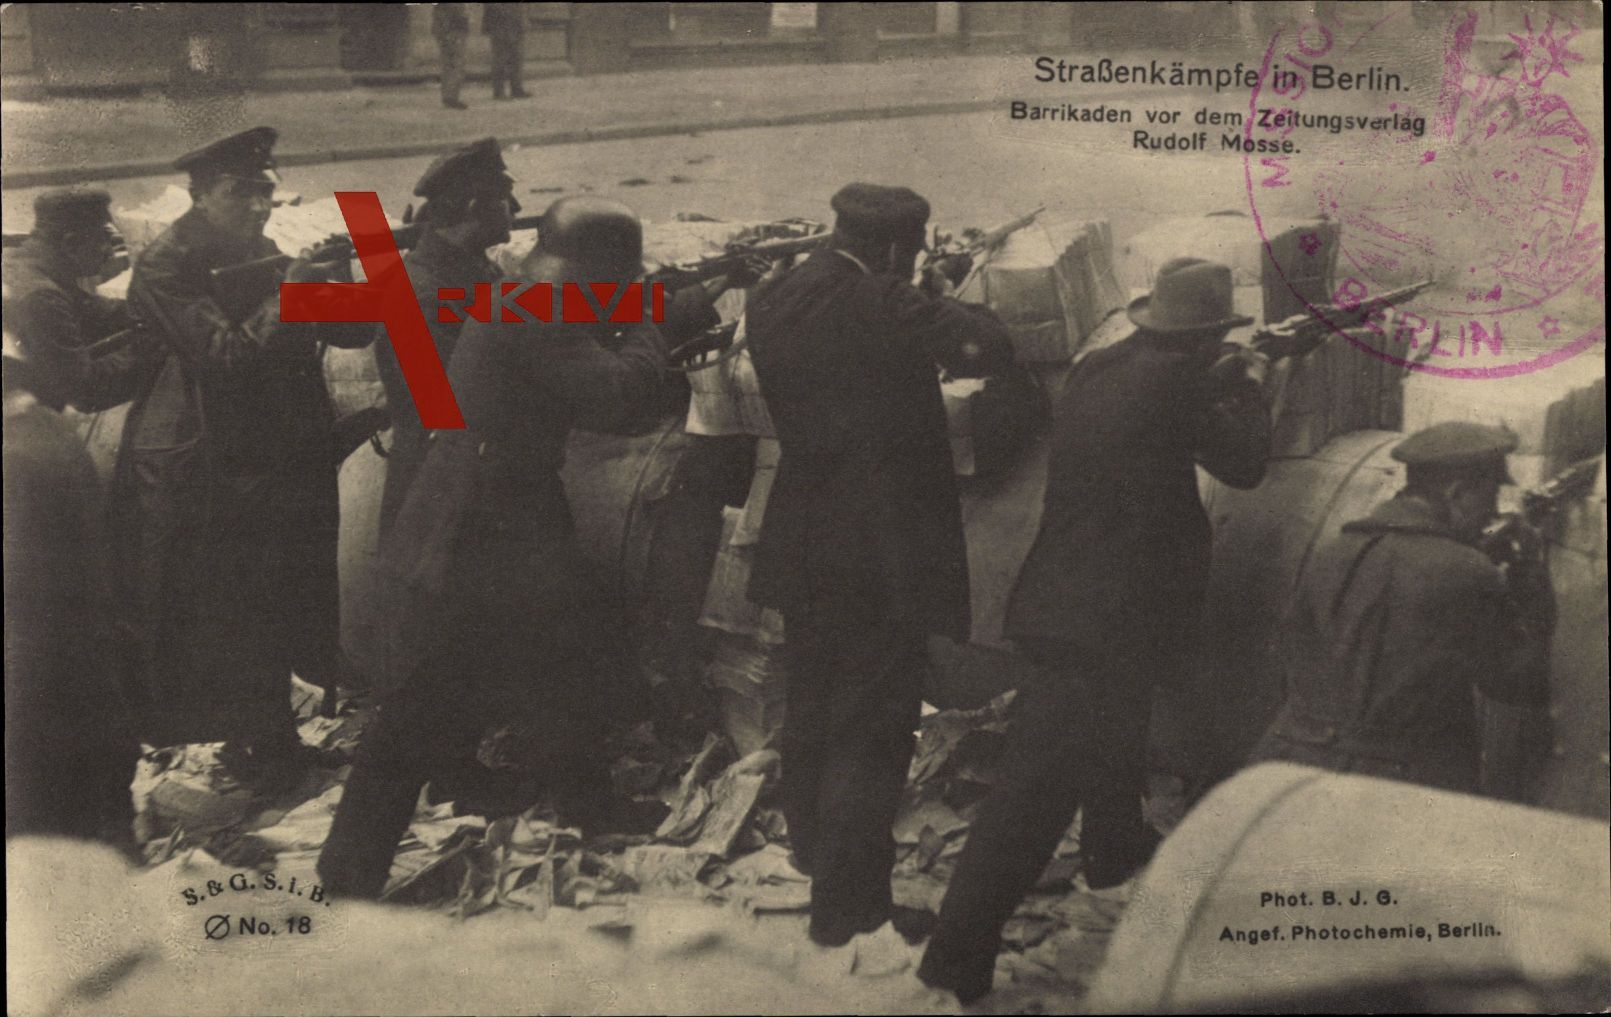 Berlin, Straßenkämpfe, Barrikaden vor dem Zeitungsverlag Rudolf Mosse